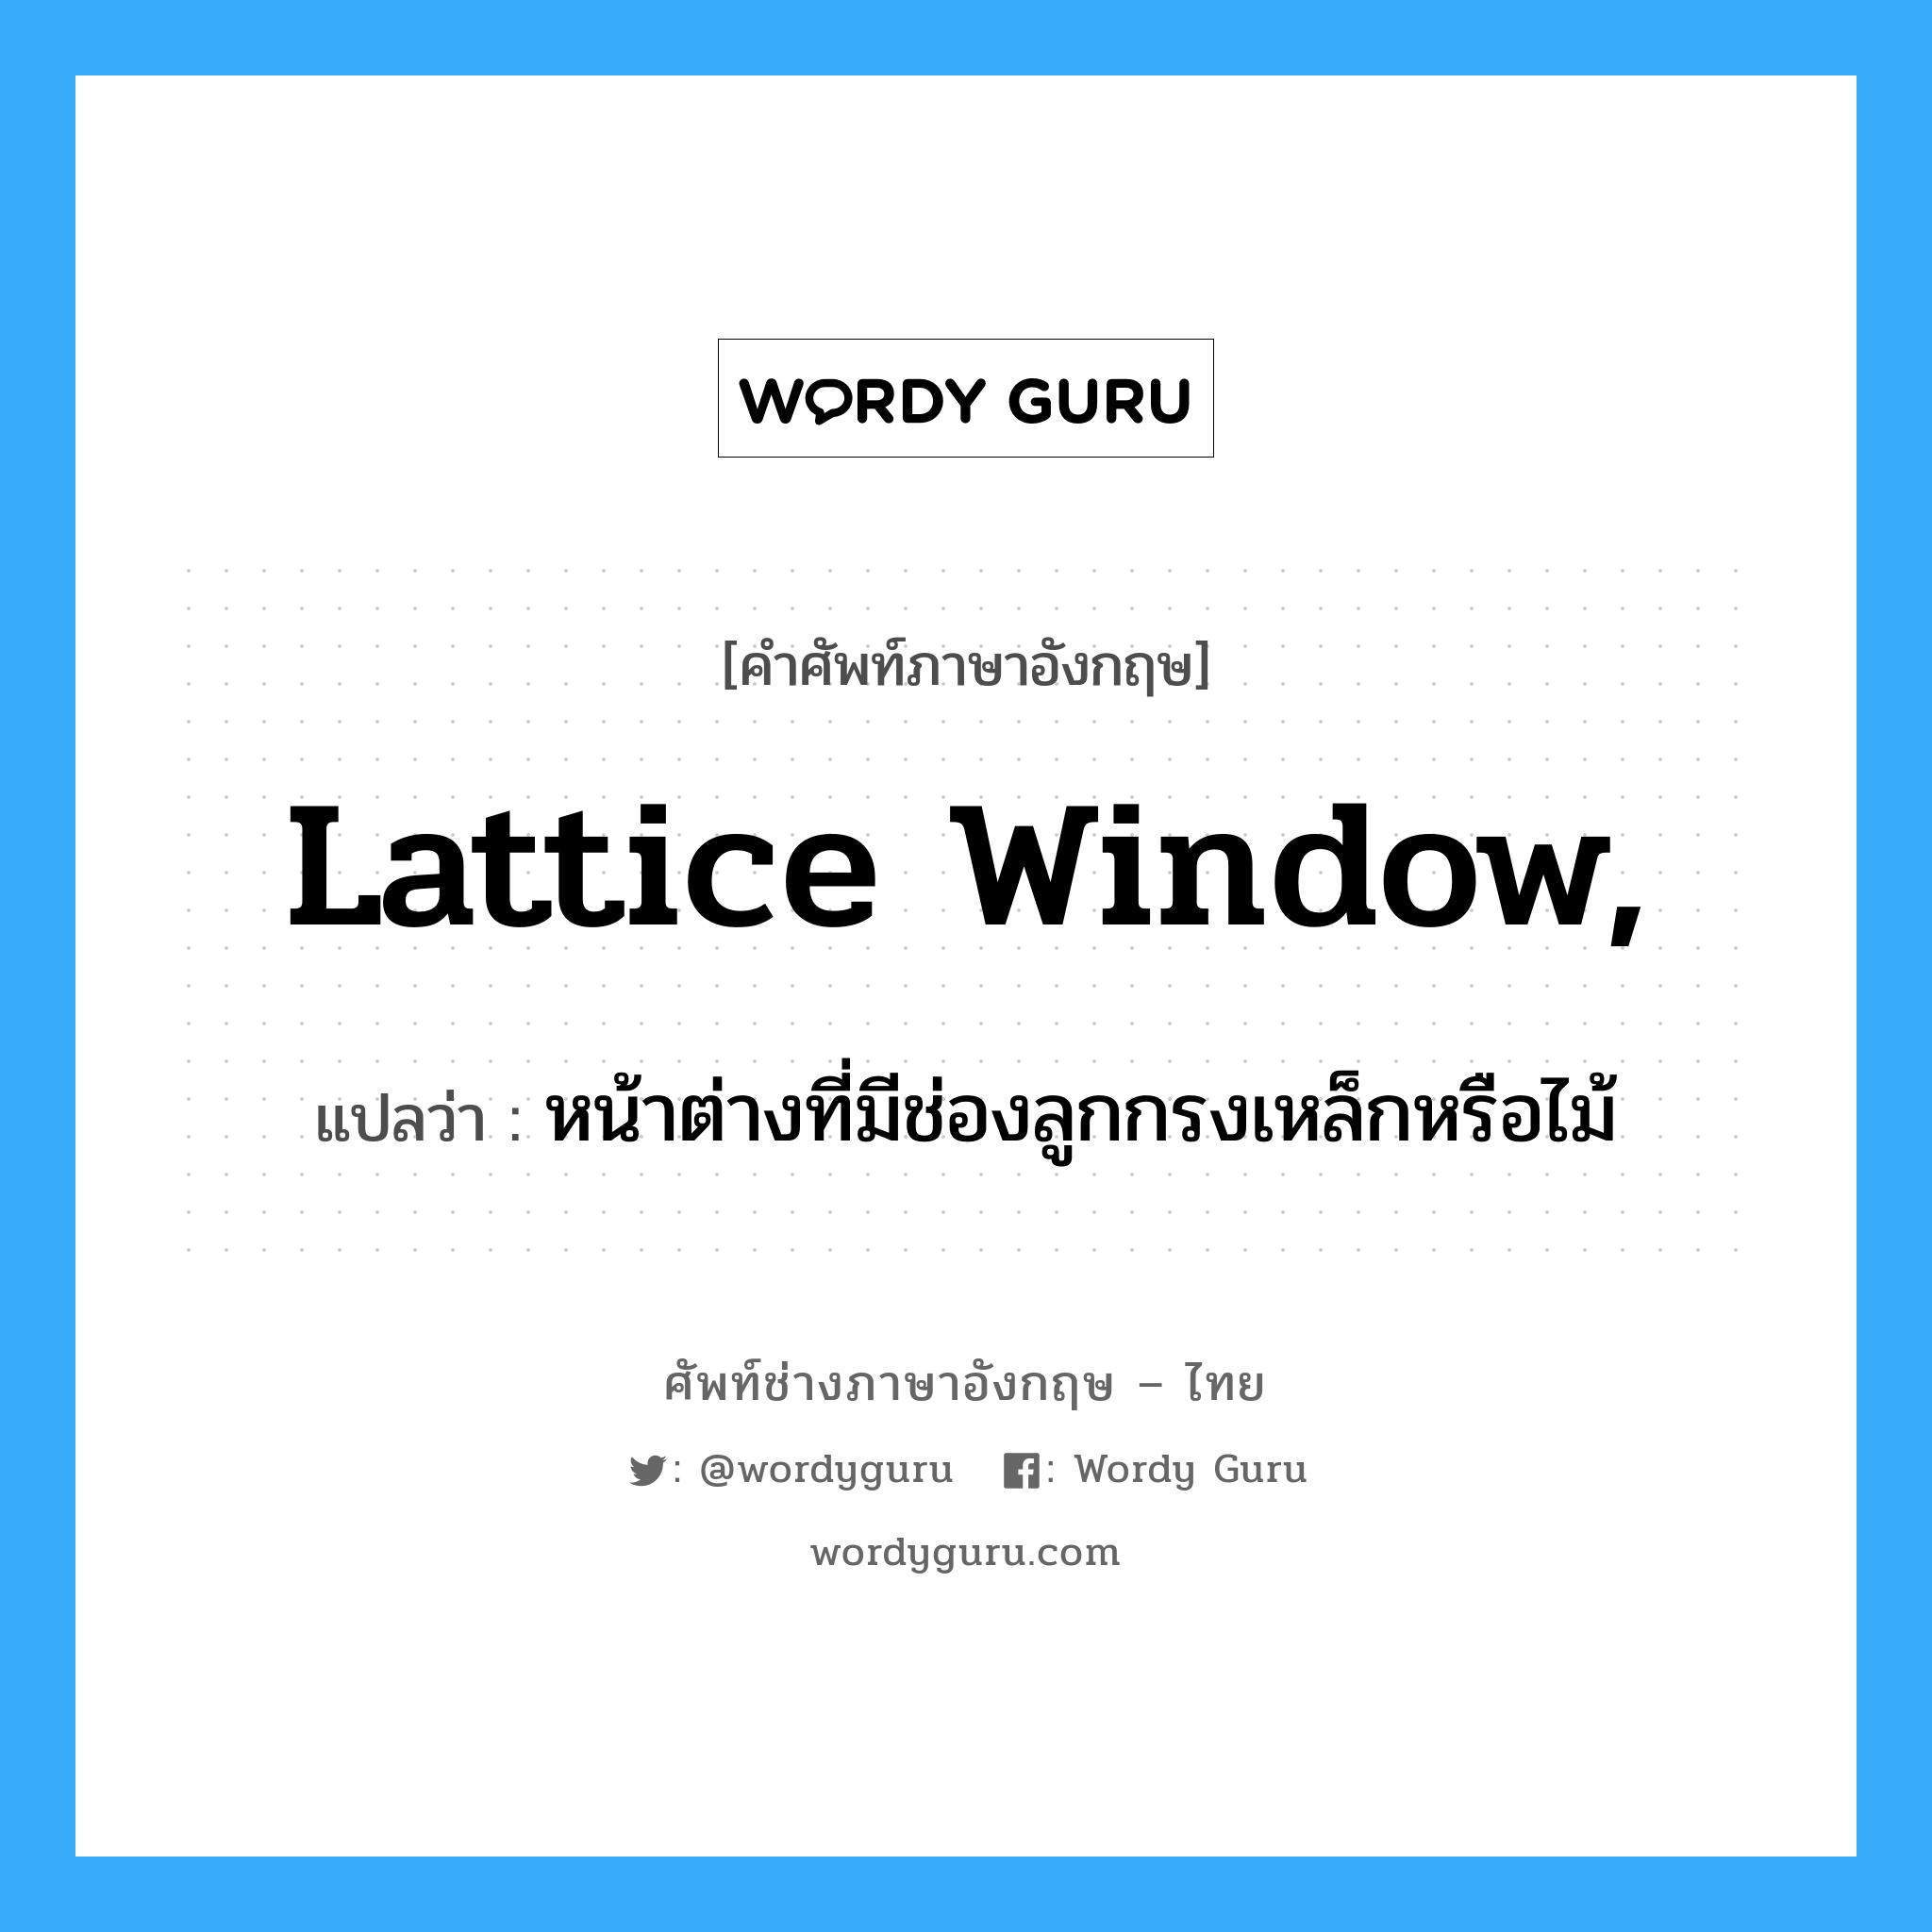 หน้าต่างที่มีช่องลูกกรงเหล็กหรือไม้ ภาษาอังกฤษ?, คำศัพท์ช่างภาษาอังกฤษ - ไทย หน้าต่างที่มีช่องลูกกรงเหล็กหรือไม้ คำศัพท์ภาษาอังกฤษ หน้าต่างที่มีช่องลูกกรงเหล็กหรือไม้ แปลว่า lattice window,